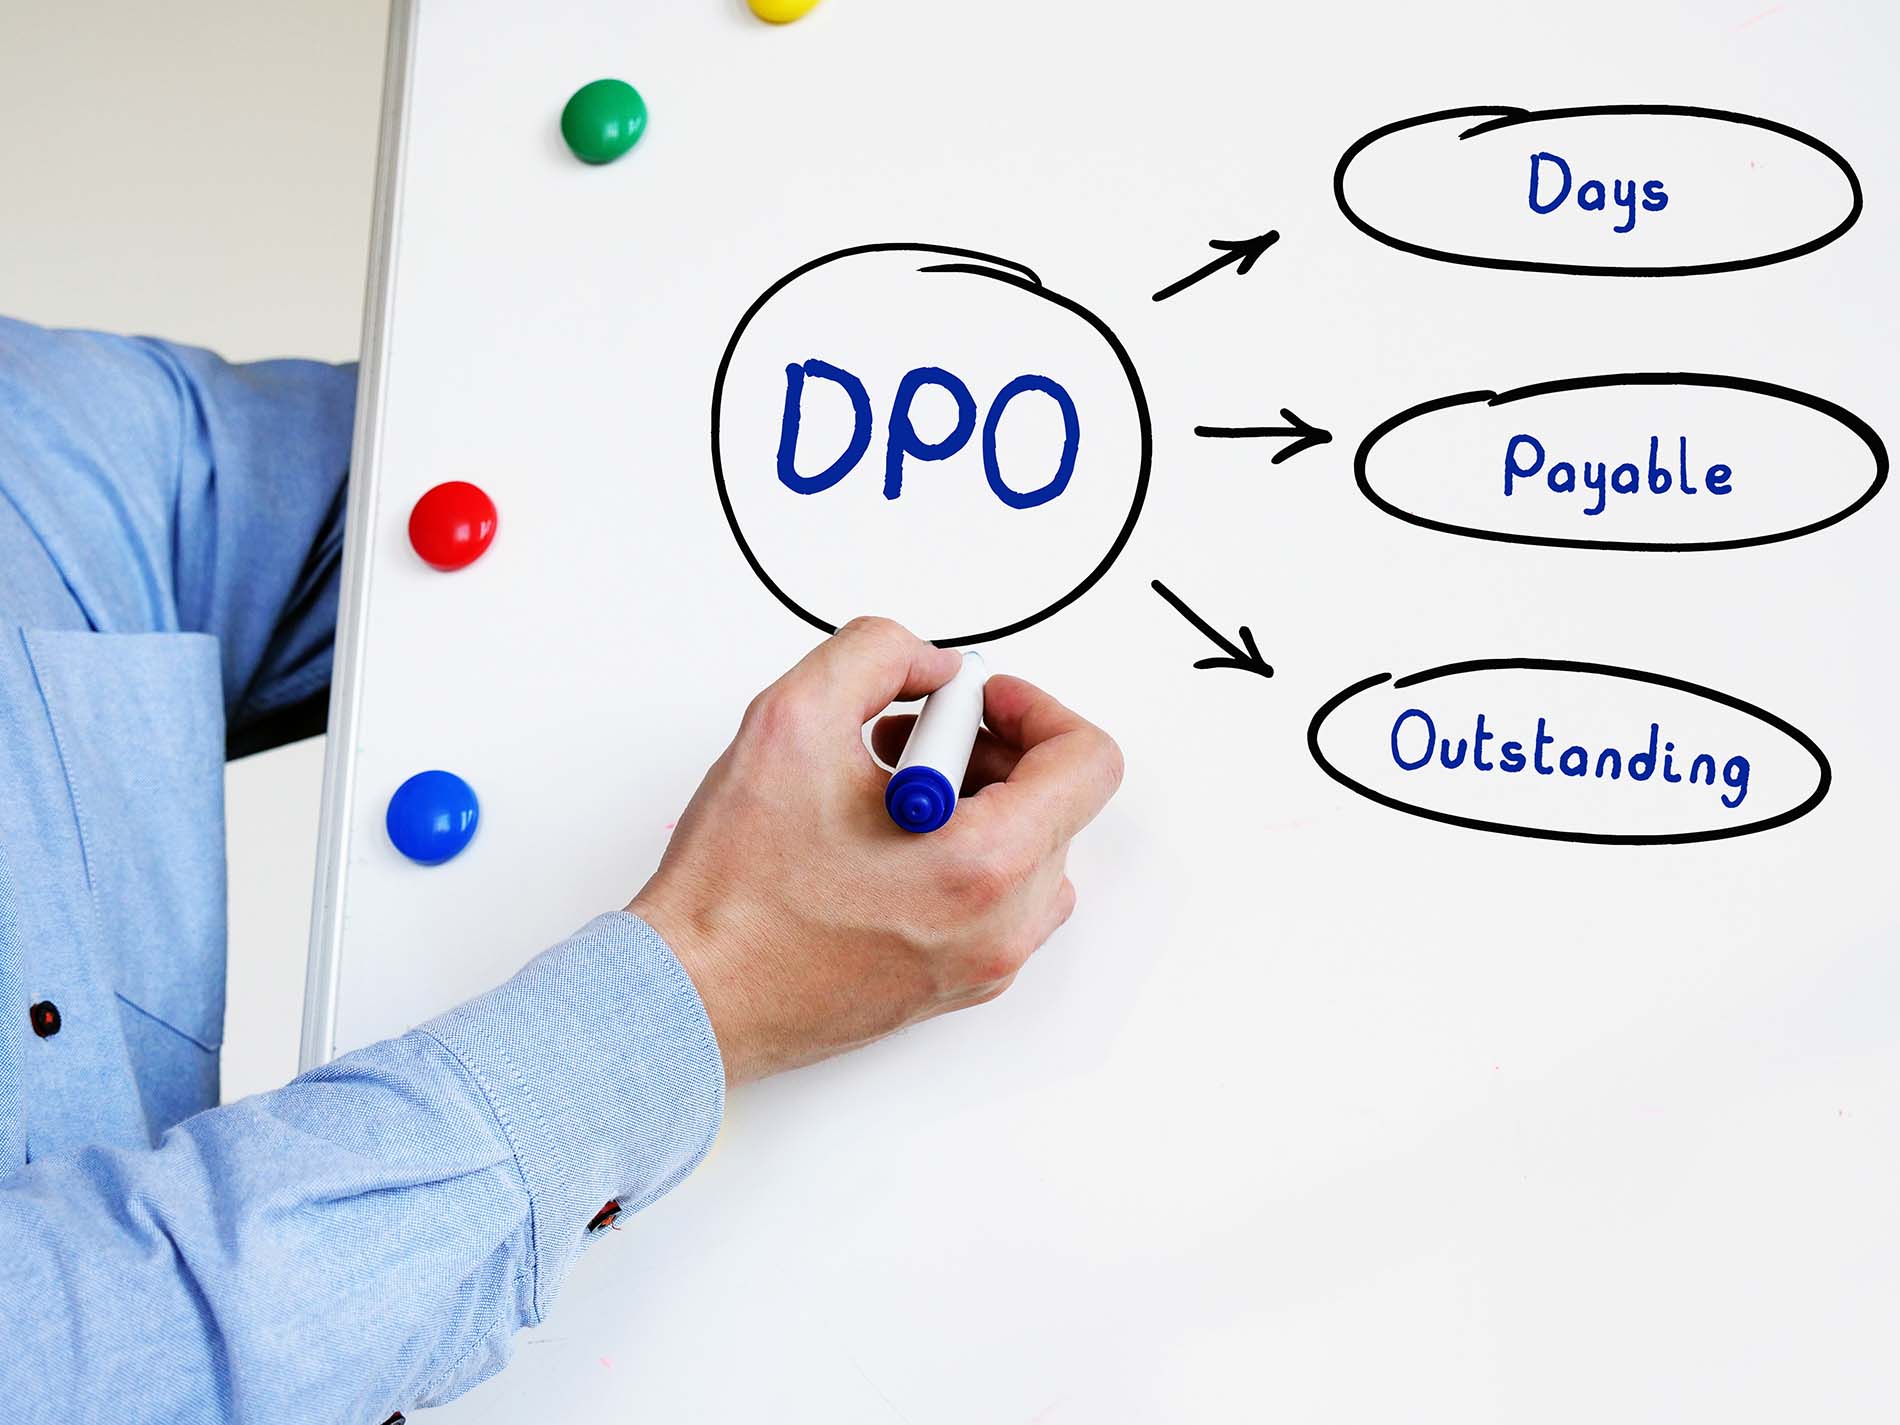 Définition de DPO - Days Payable Outstanding